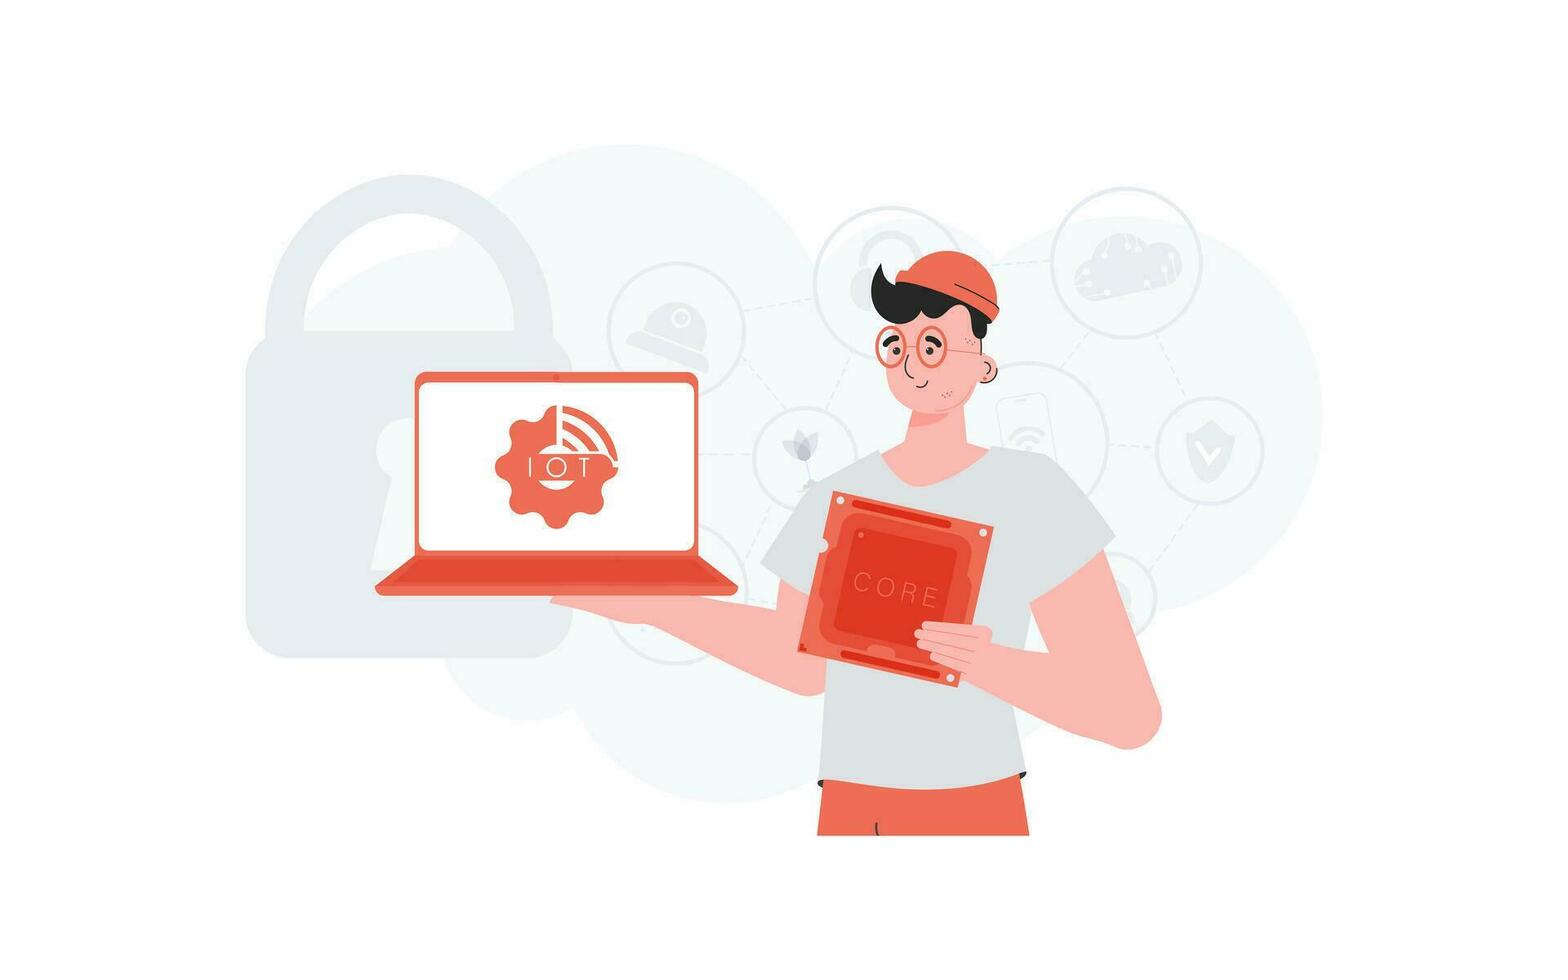 un hombre sostiene un ordenador portátil y un procesador chip en su manos. Internet de cosas y automatización concepto. vector ilustración en plano estilo.